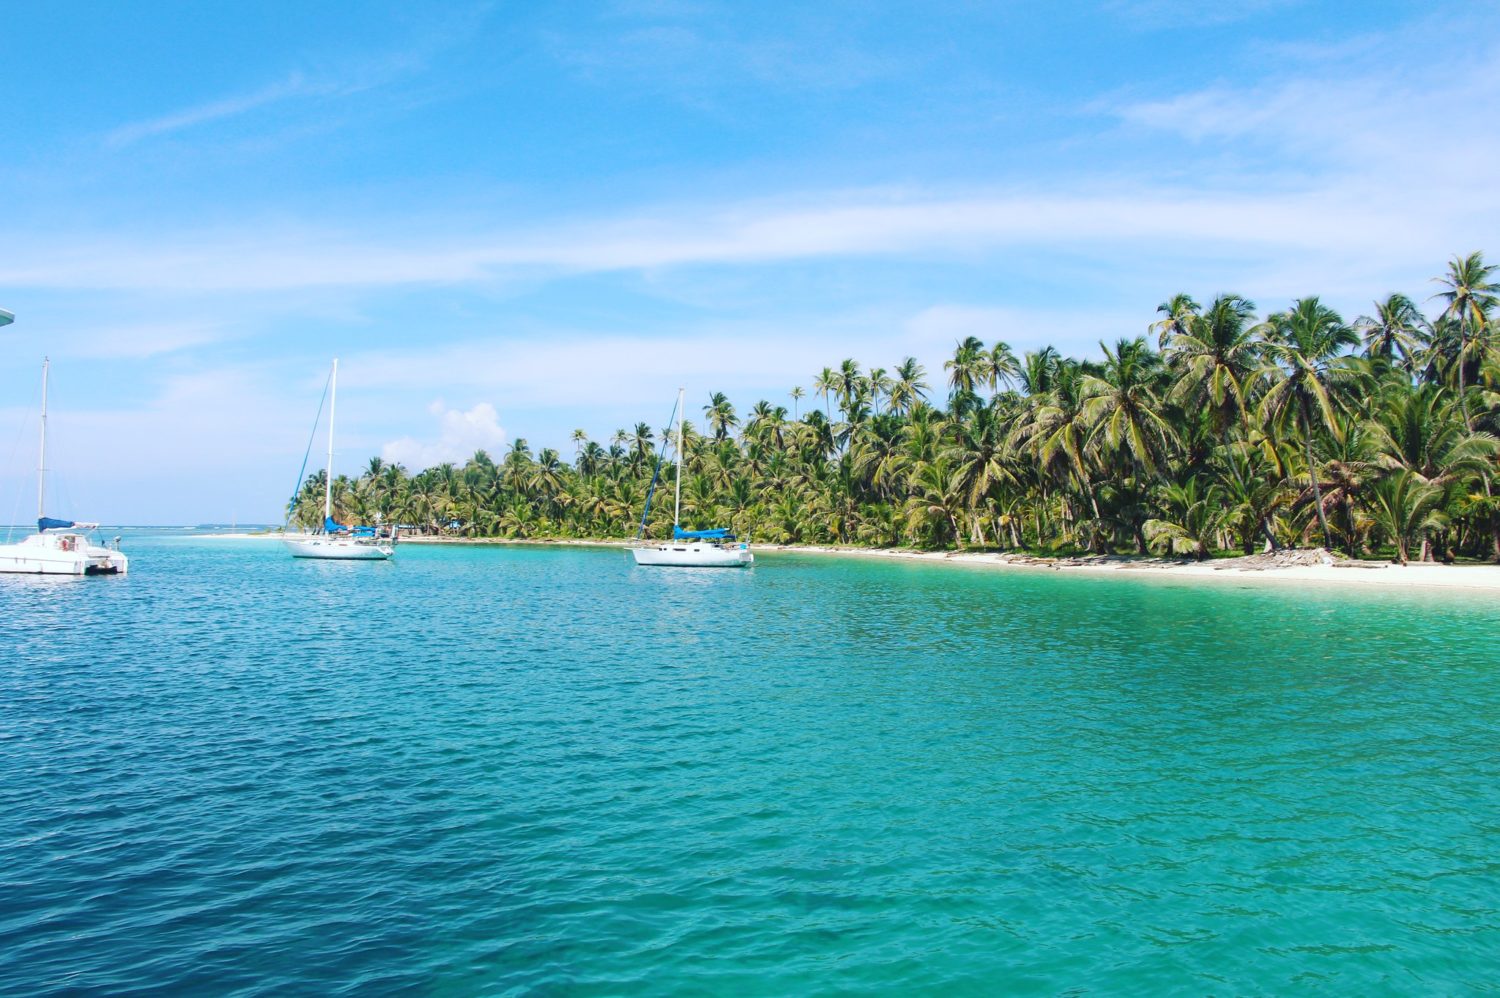 Vista de ilha paradisíaca em San Blas, no Panamá. Foto de Seann McAuliffe via Flickr